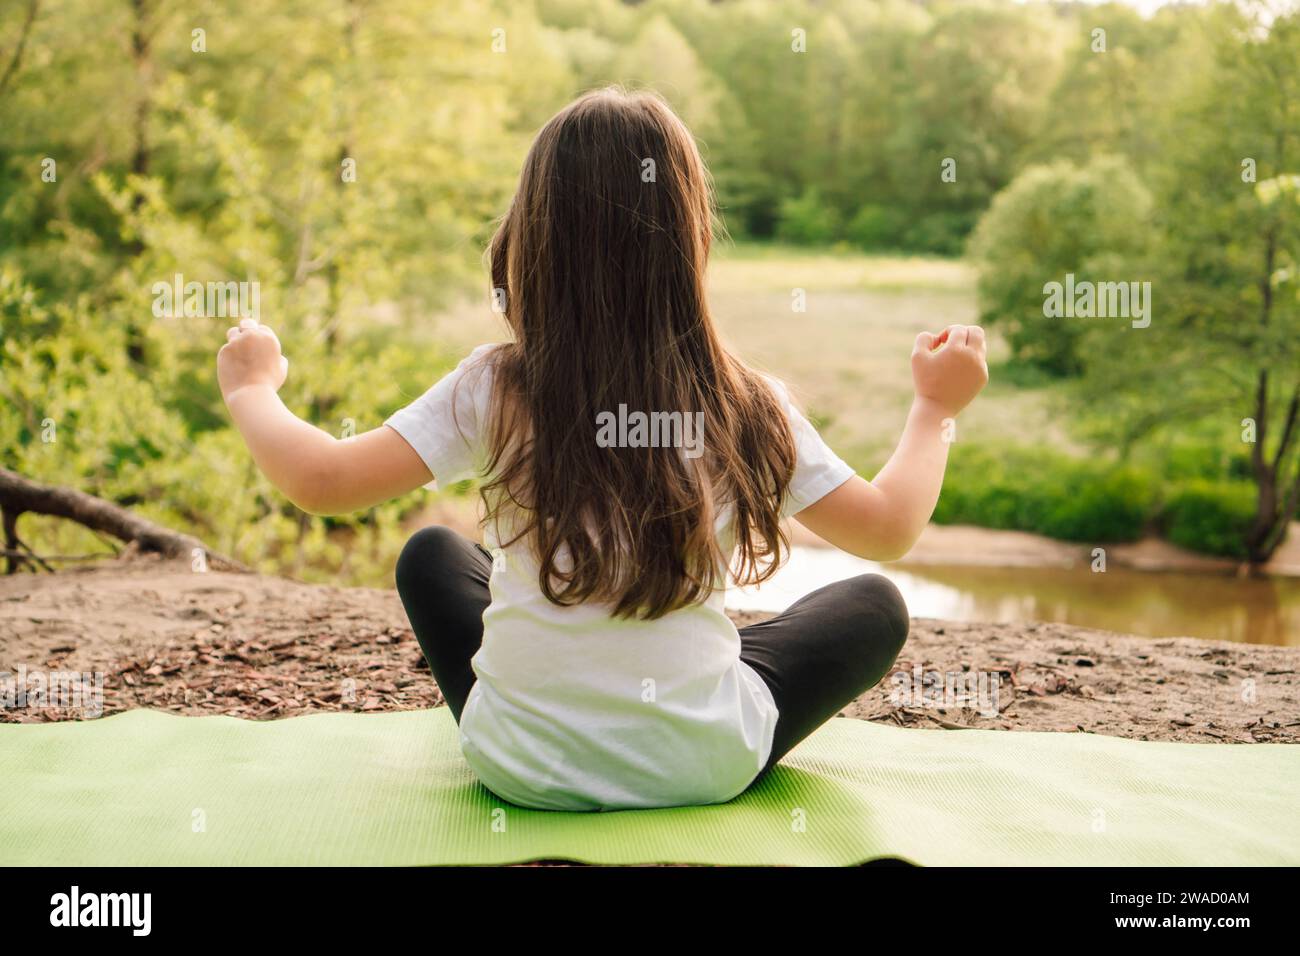 Rückansicht eines kleinen Mädchens mit braunen langen Haaren, das auf grünem, sportlichem Teppich sitzt und vor dem Fluss Yoga praktiziert. Aktive Sportlerin in weißem T-sh Stockfoto